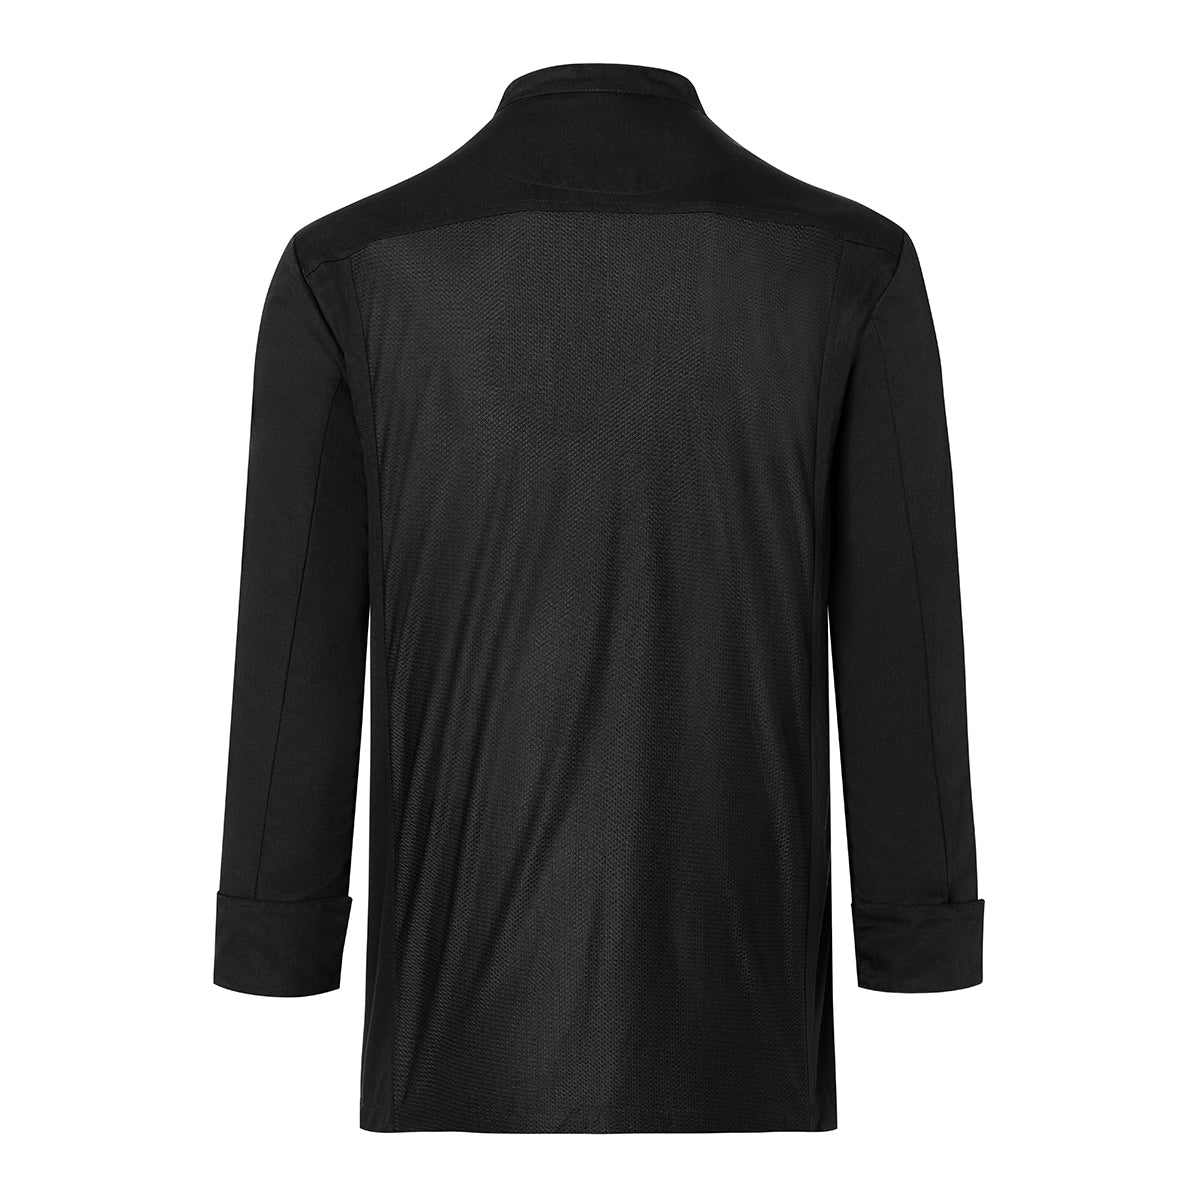 (6 stk) Karlowsky langermet skjorte - svart - str. M